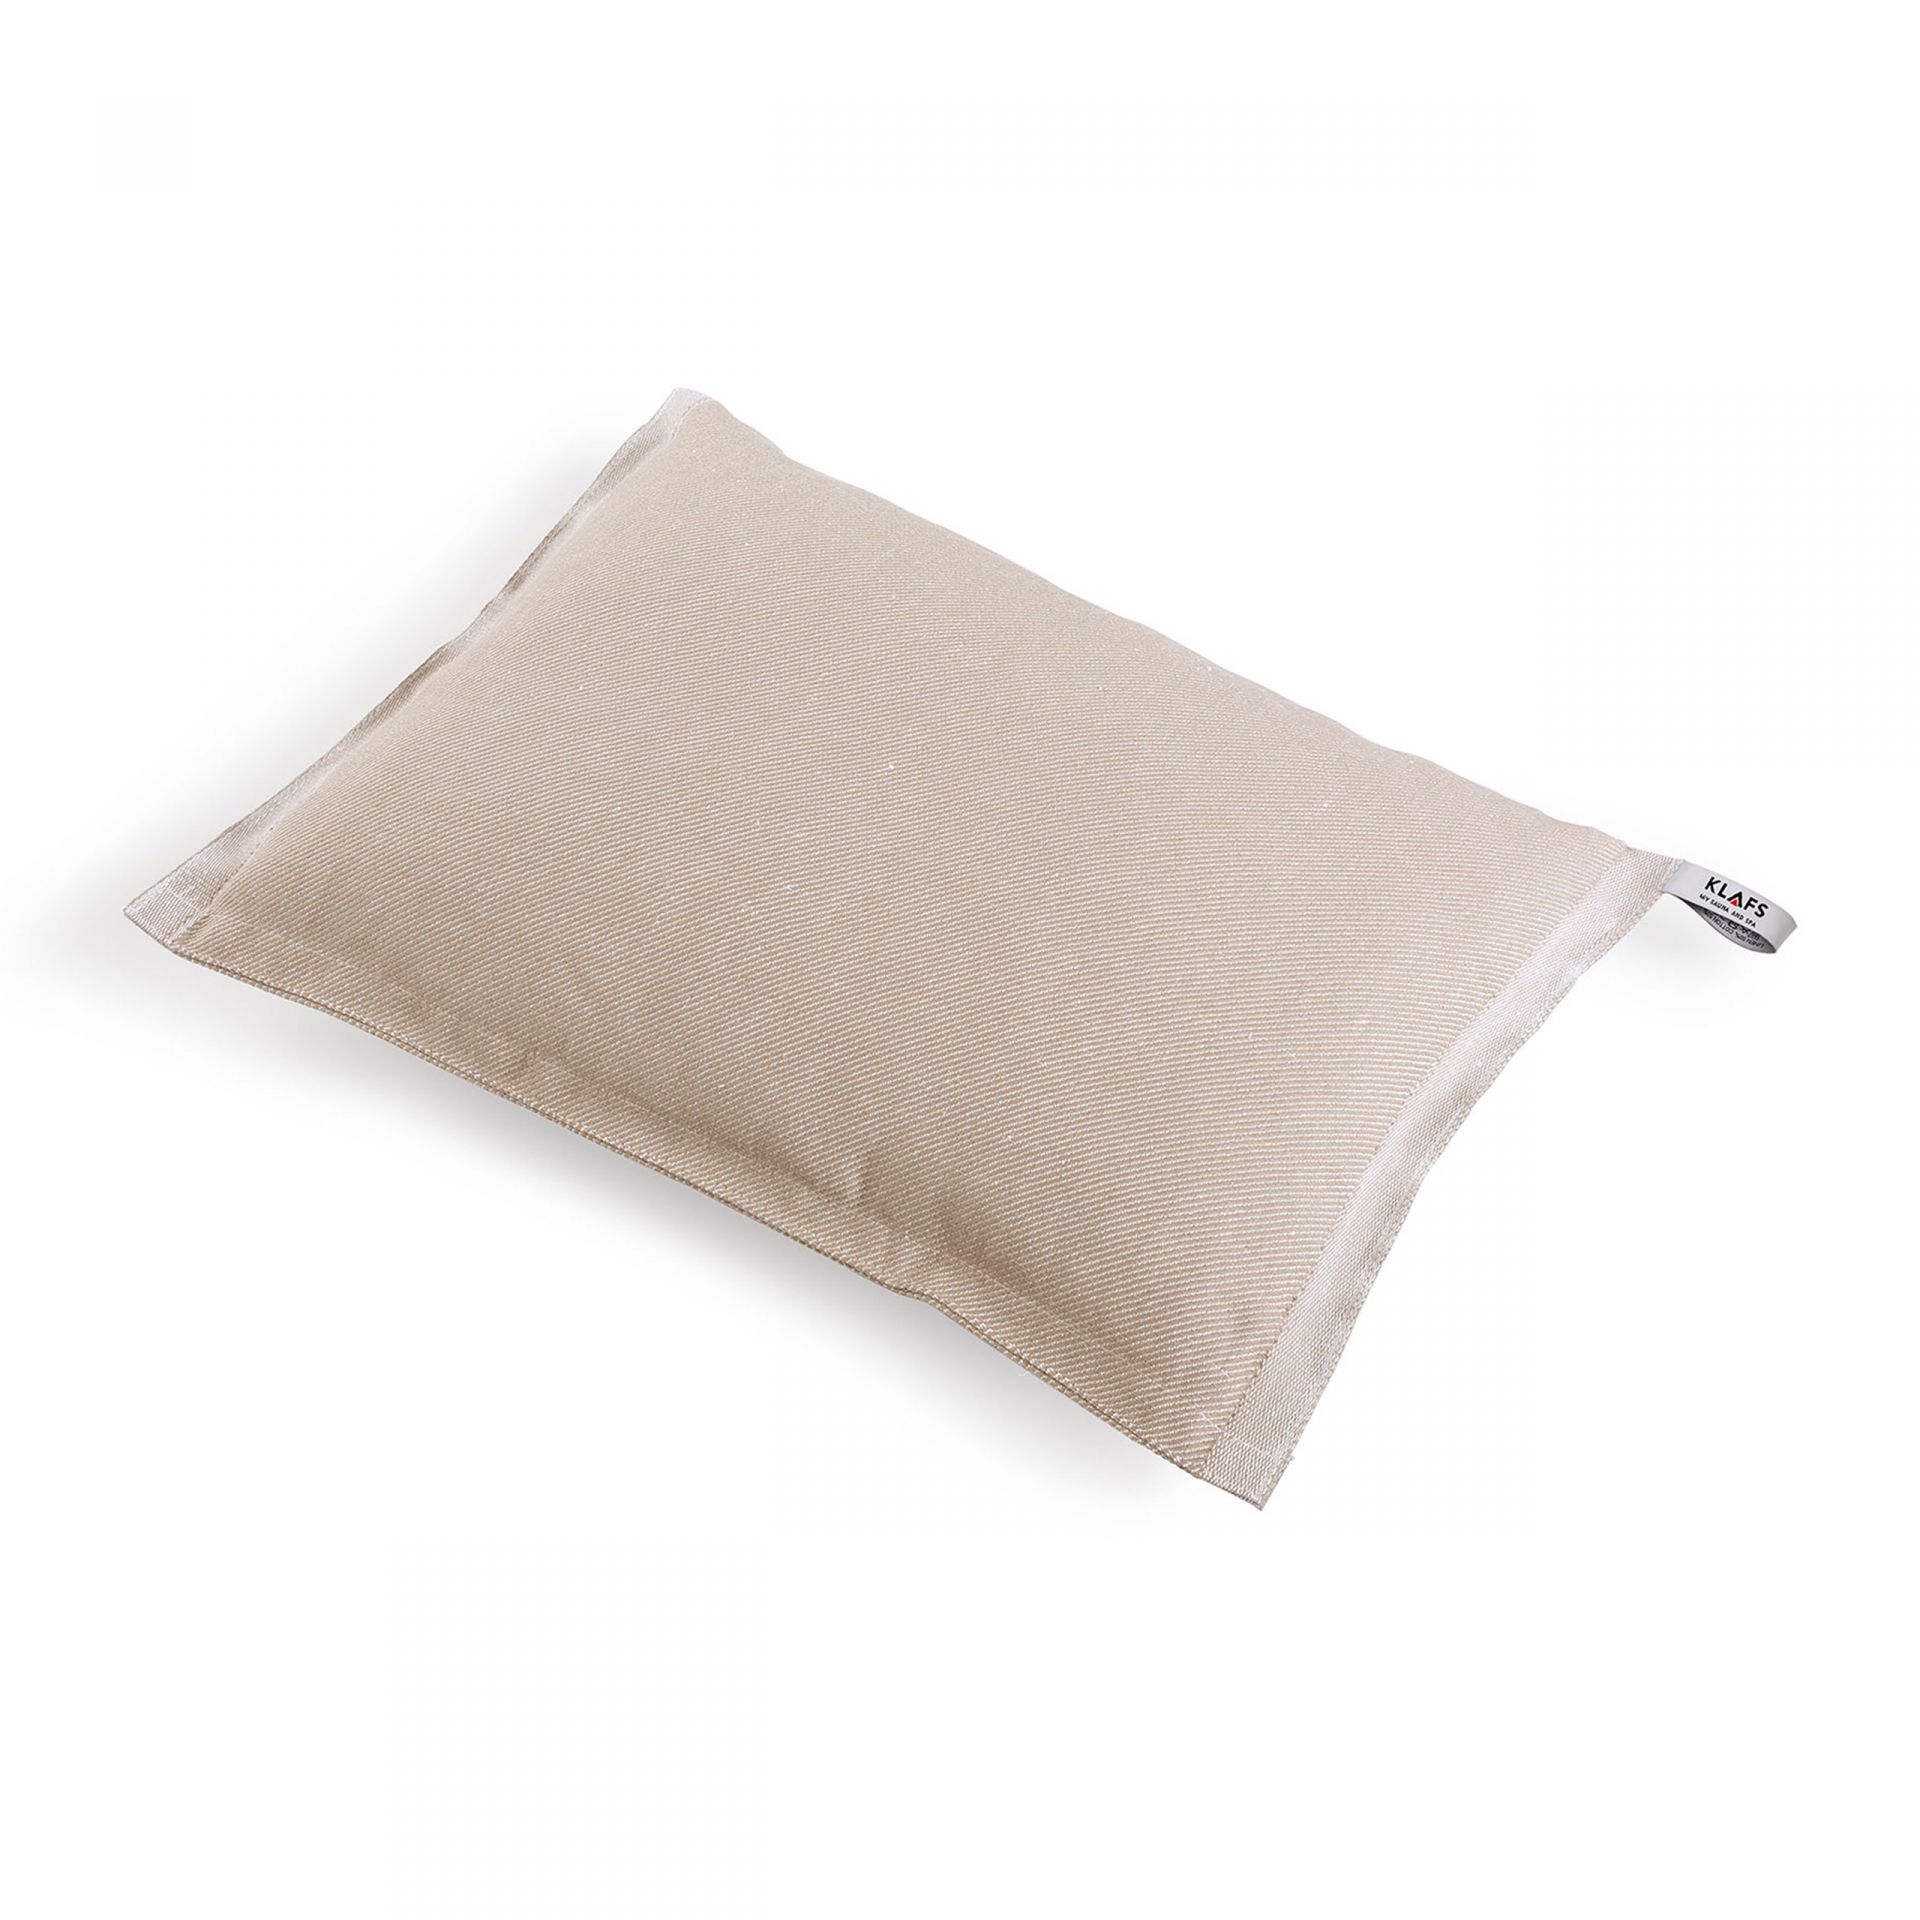 Подушка для сауны натурального цвета из смесовой ткани KLAFS